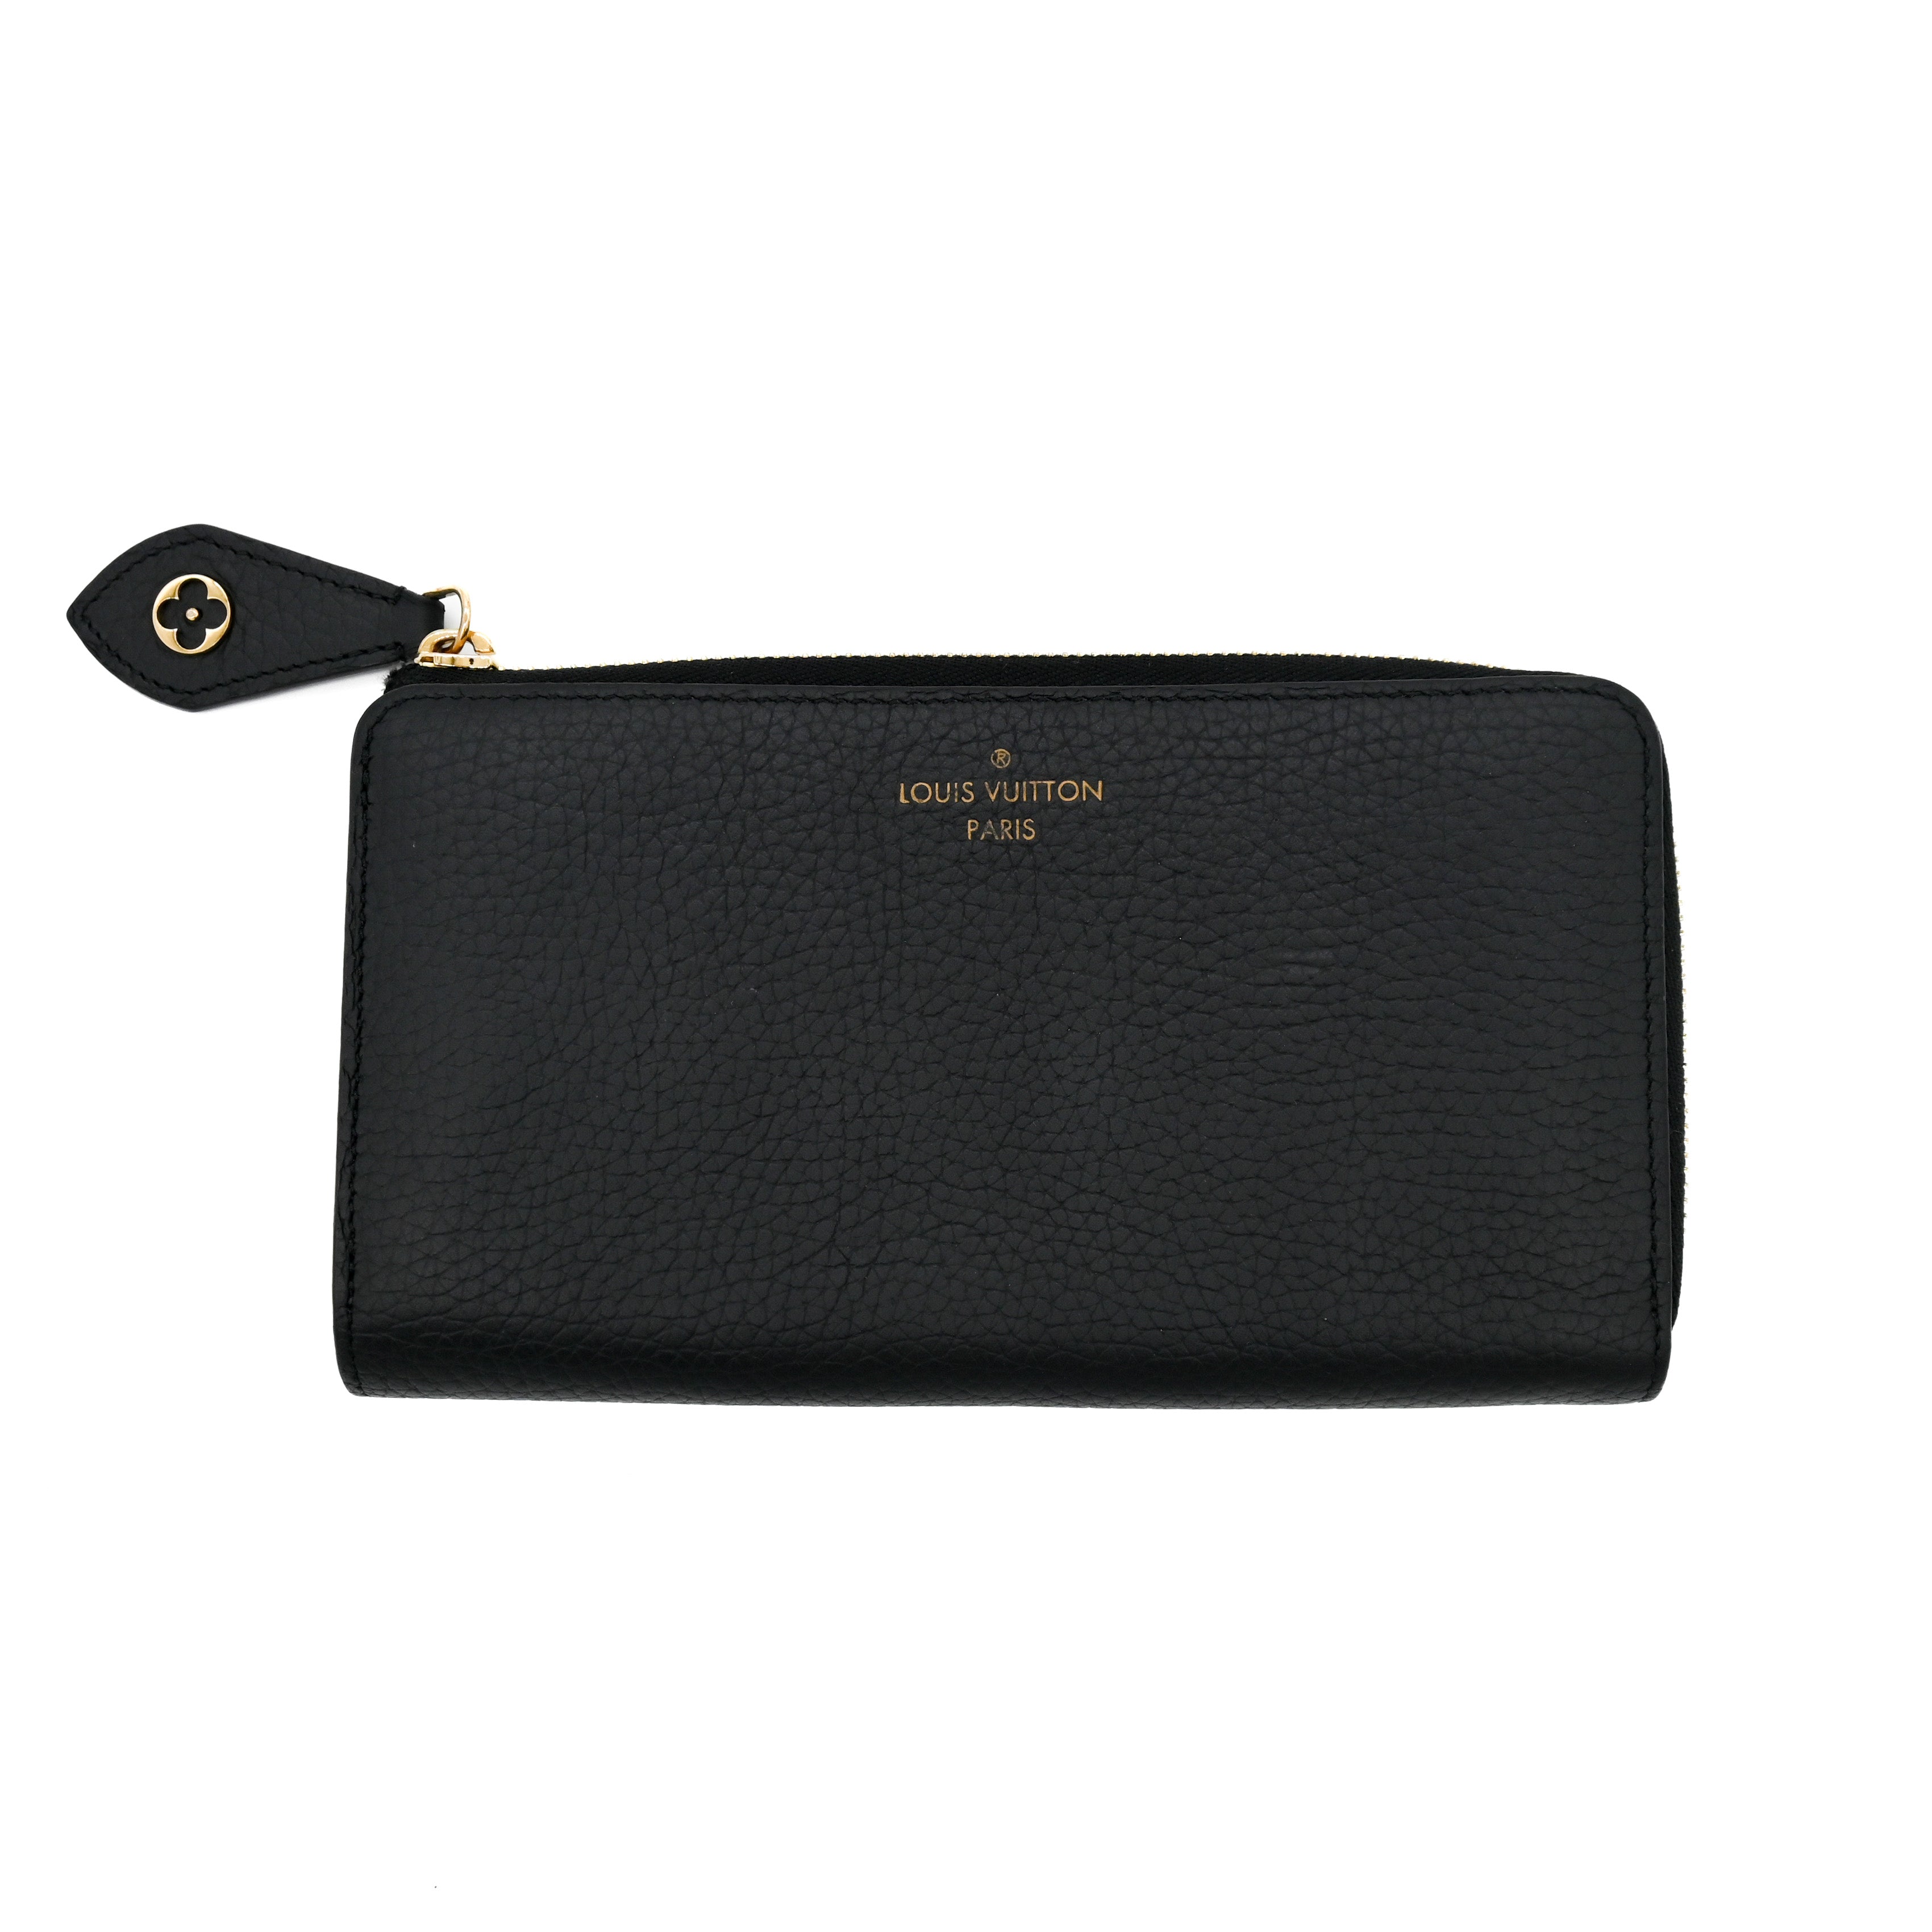 LOUIS VUITTON Louis Vuitton Taurillon Portefeuille Comete Zip Wallet Black Leather - Vault 55